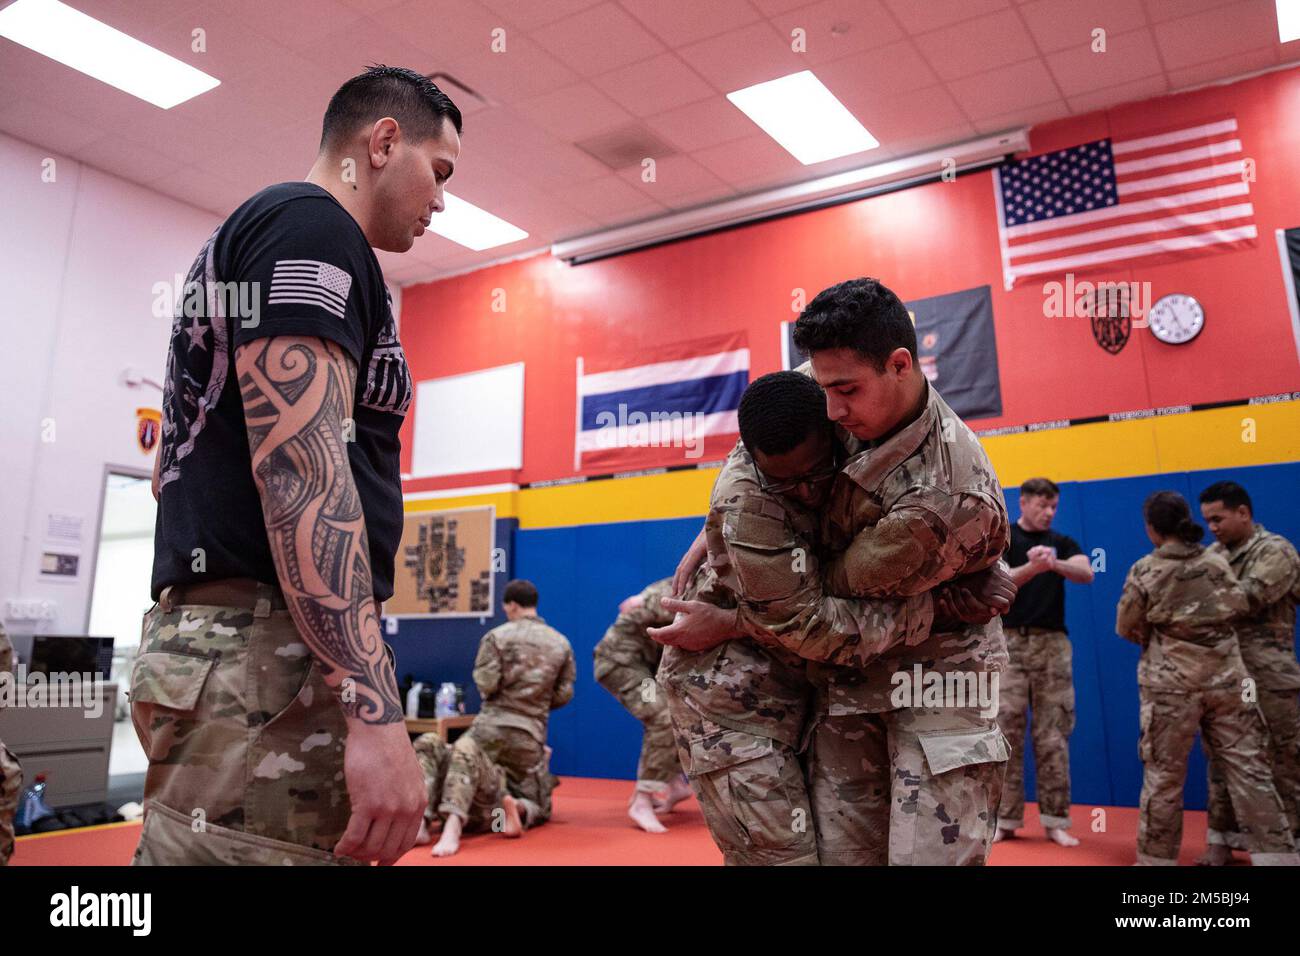 Soldaten aus Fort Bragg, North Carolina, trainieren Kämpfer während eines einwöchigen Kurses, in dem Soldaten auf die Grundlagen von Kämpfern ausgebildet werden. Wenn jeder Soldat den Kurs erfolgreich besteht, erhält er eine Zertifizierung, die es ihm ermöglicht, andere in Kämpfern auszubilden. Stockfoto